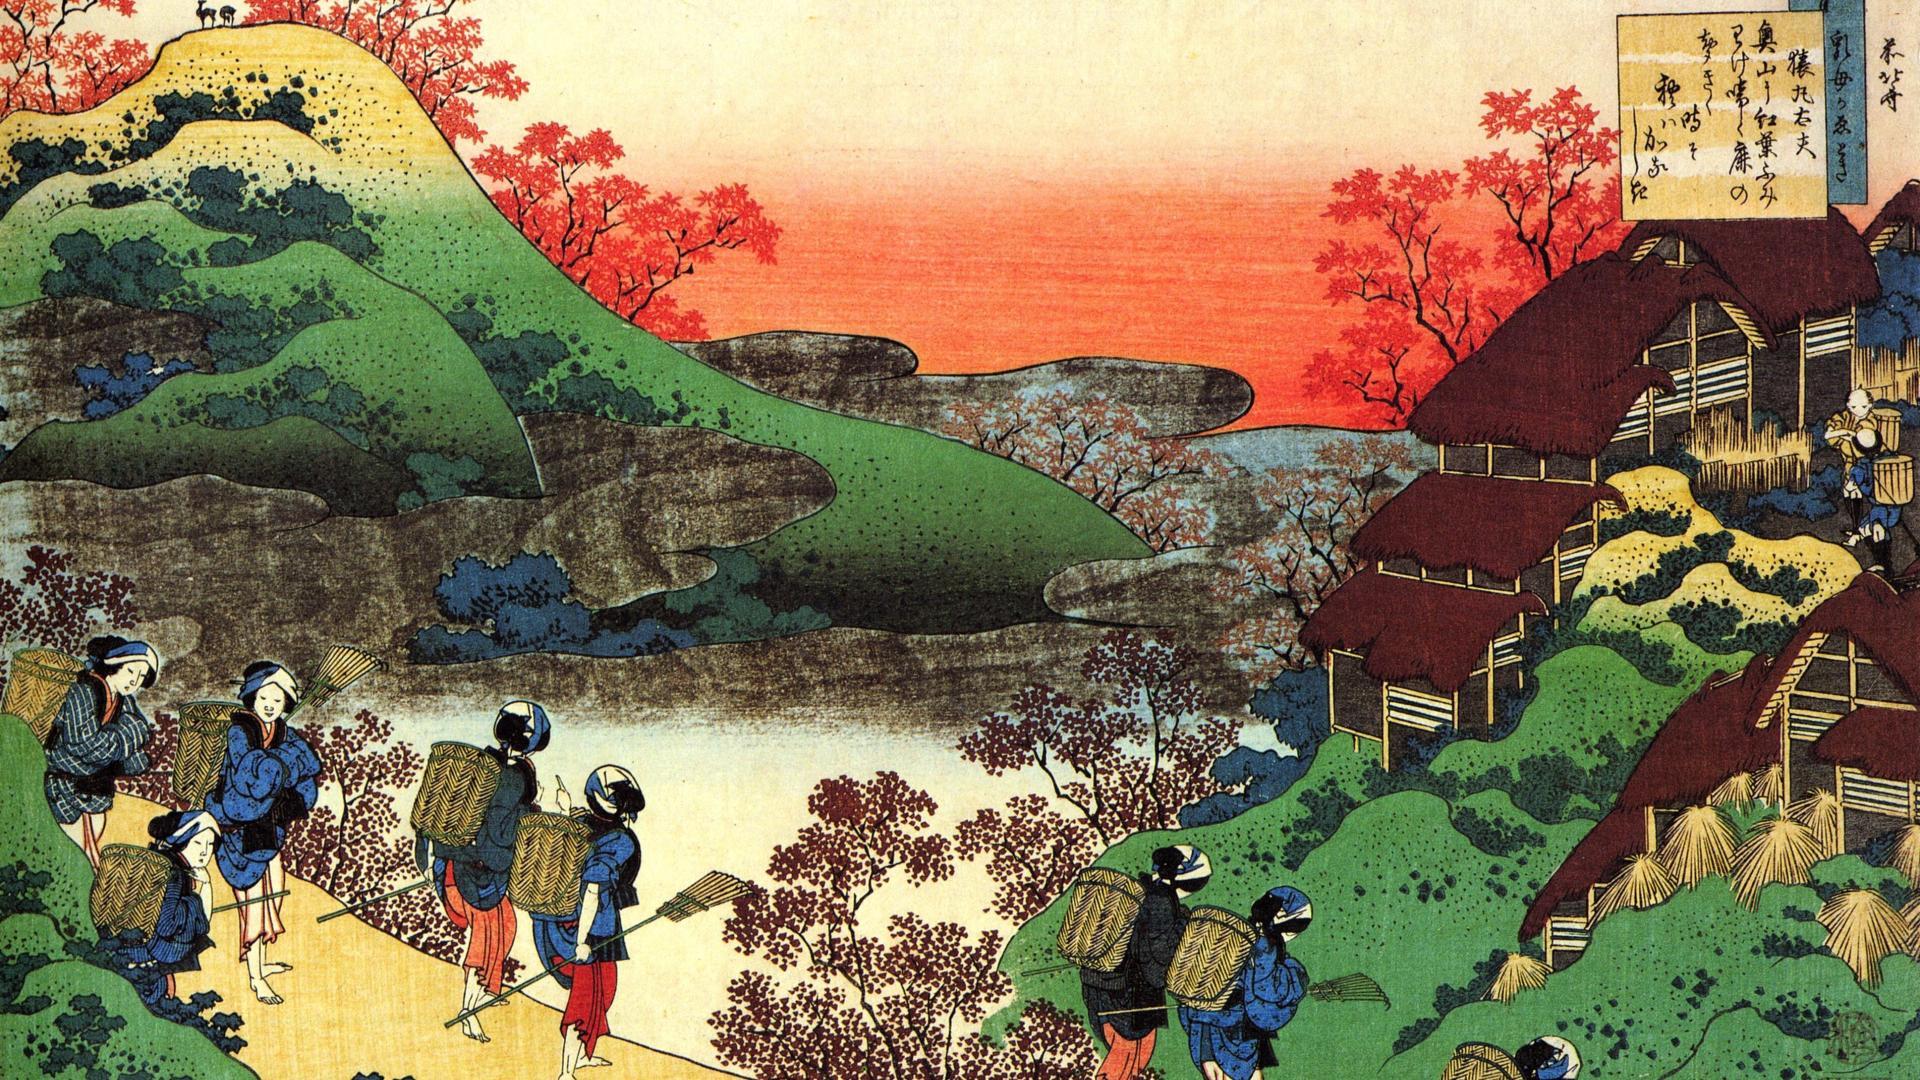 Hokusai Katsushika Wallpapers - Top Free Hokusai ...